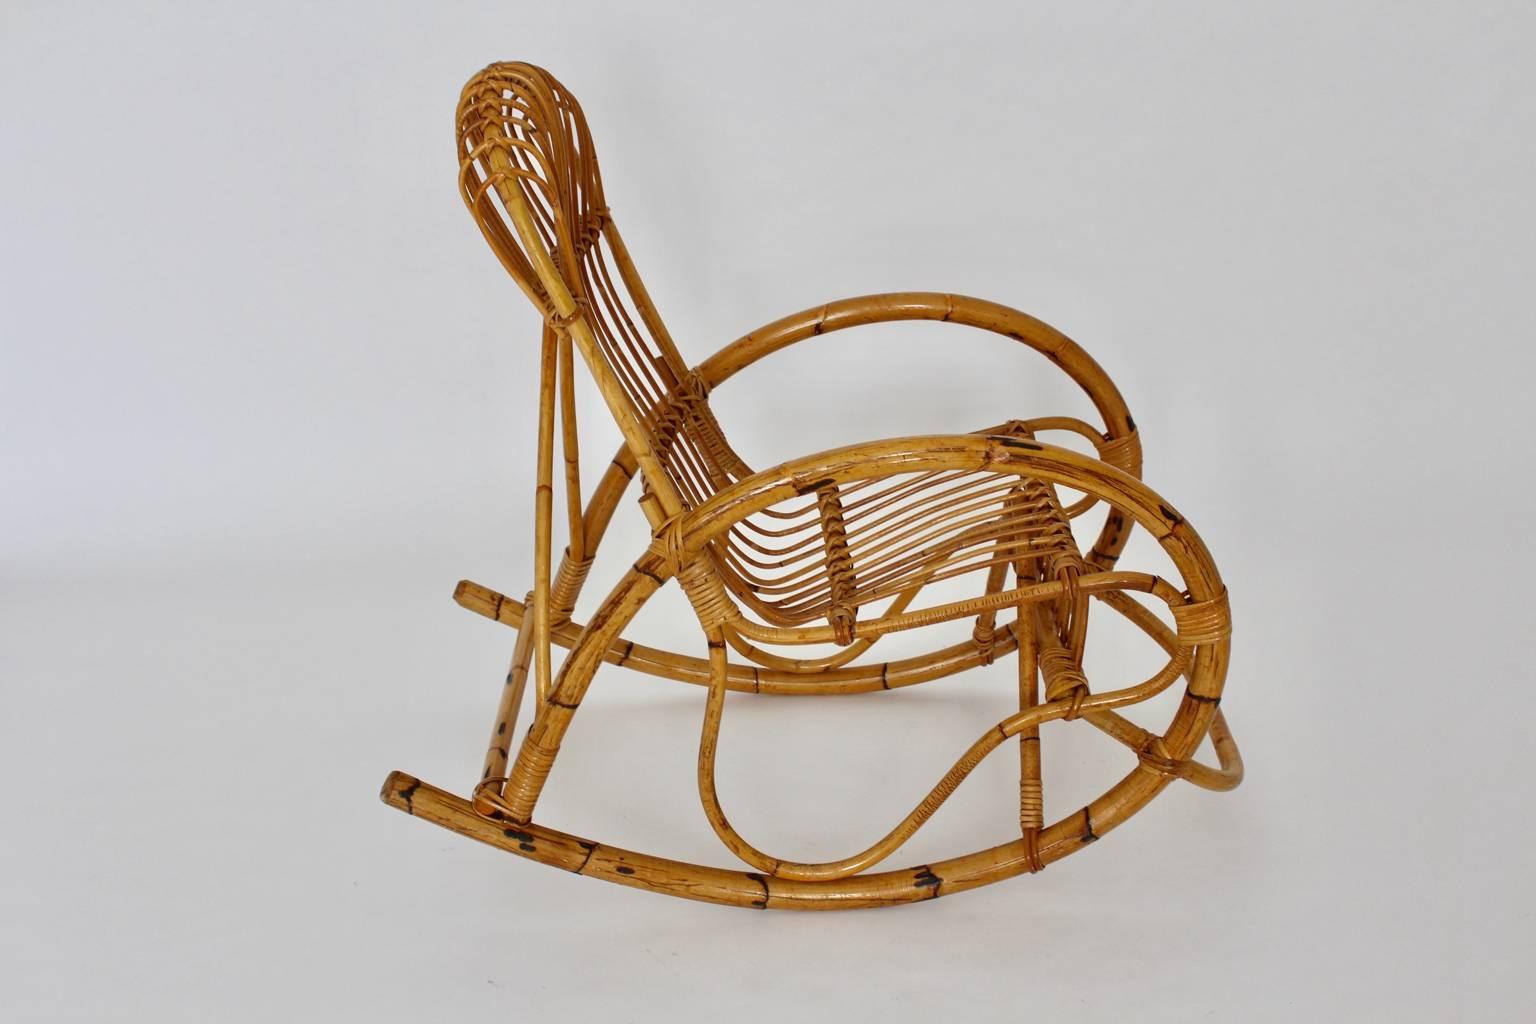 Riviera-Stil Vintage Bio-Schaukelstuhl aus Rattan Bambus Italien 1960er Jahre.
Während der skulpturale Schaukelstuhl eine tolle Form mit oval geschwungenen Armlehnen aufweist, die in das Bambus-Stammrad übergehen, sind die Sitzschale und die